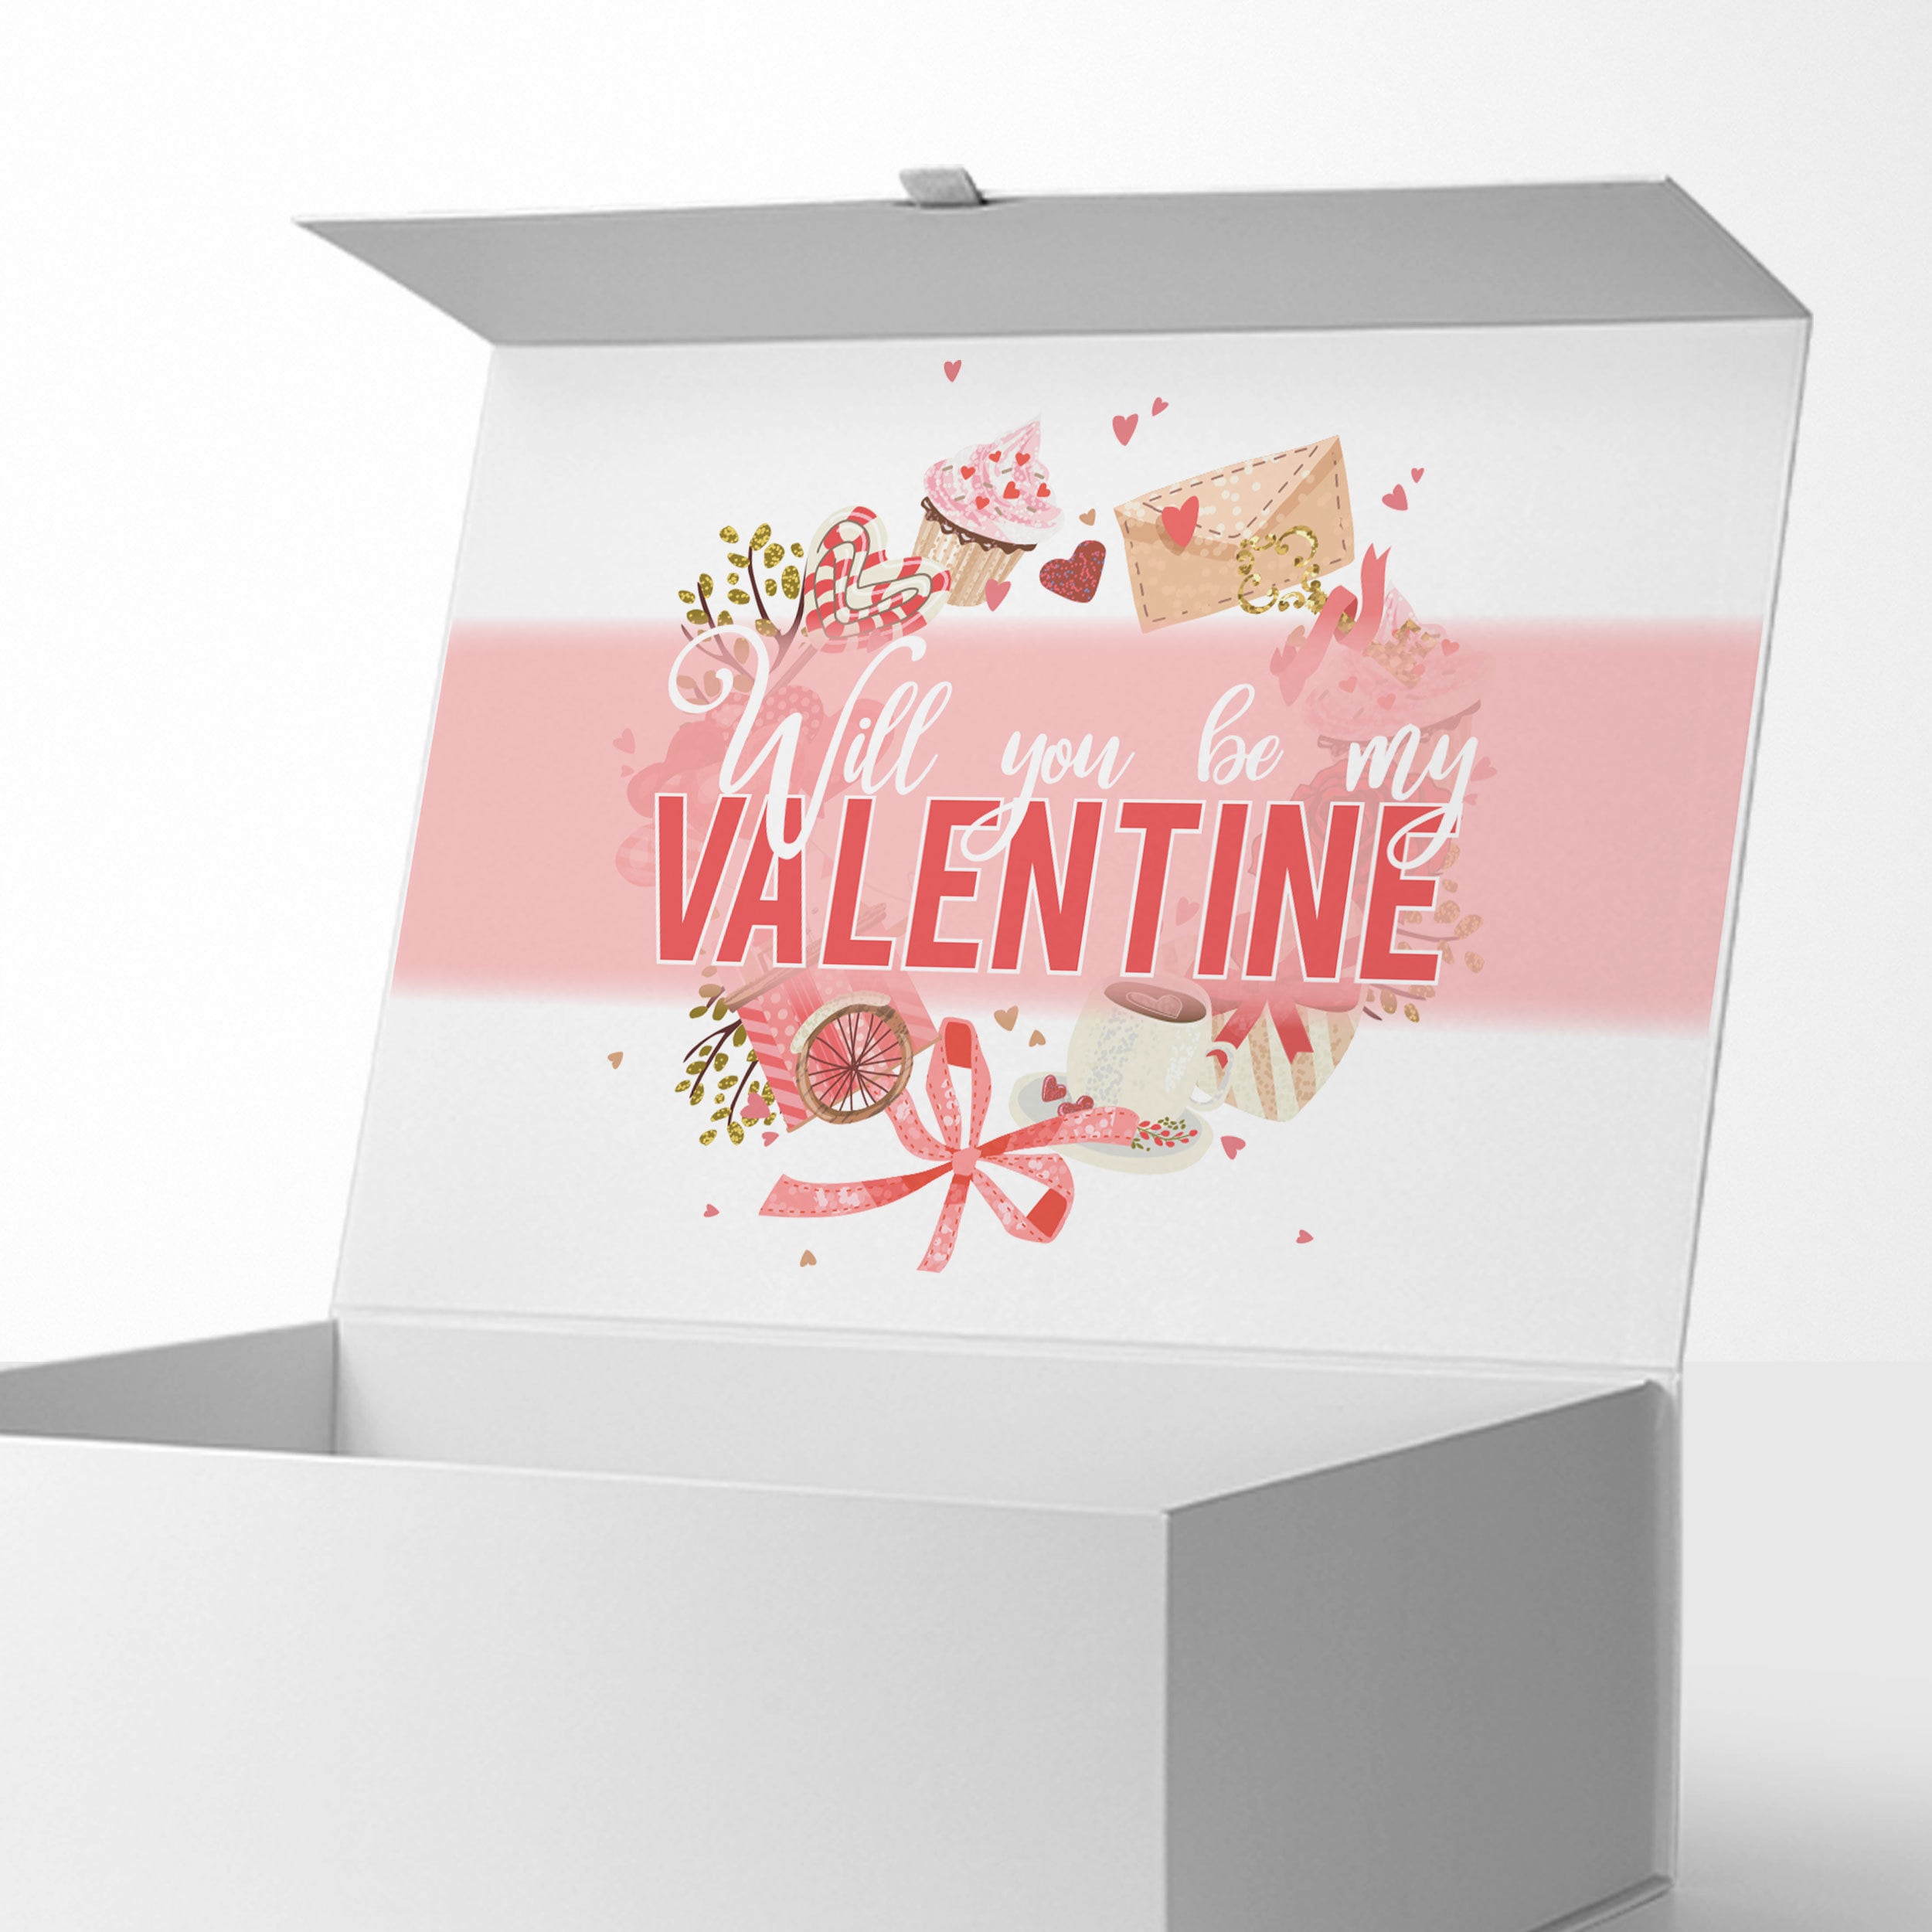 My Valentine's Day Gift – jenniesque